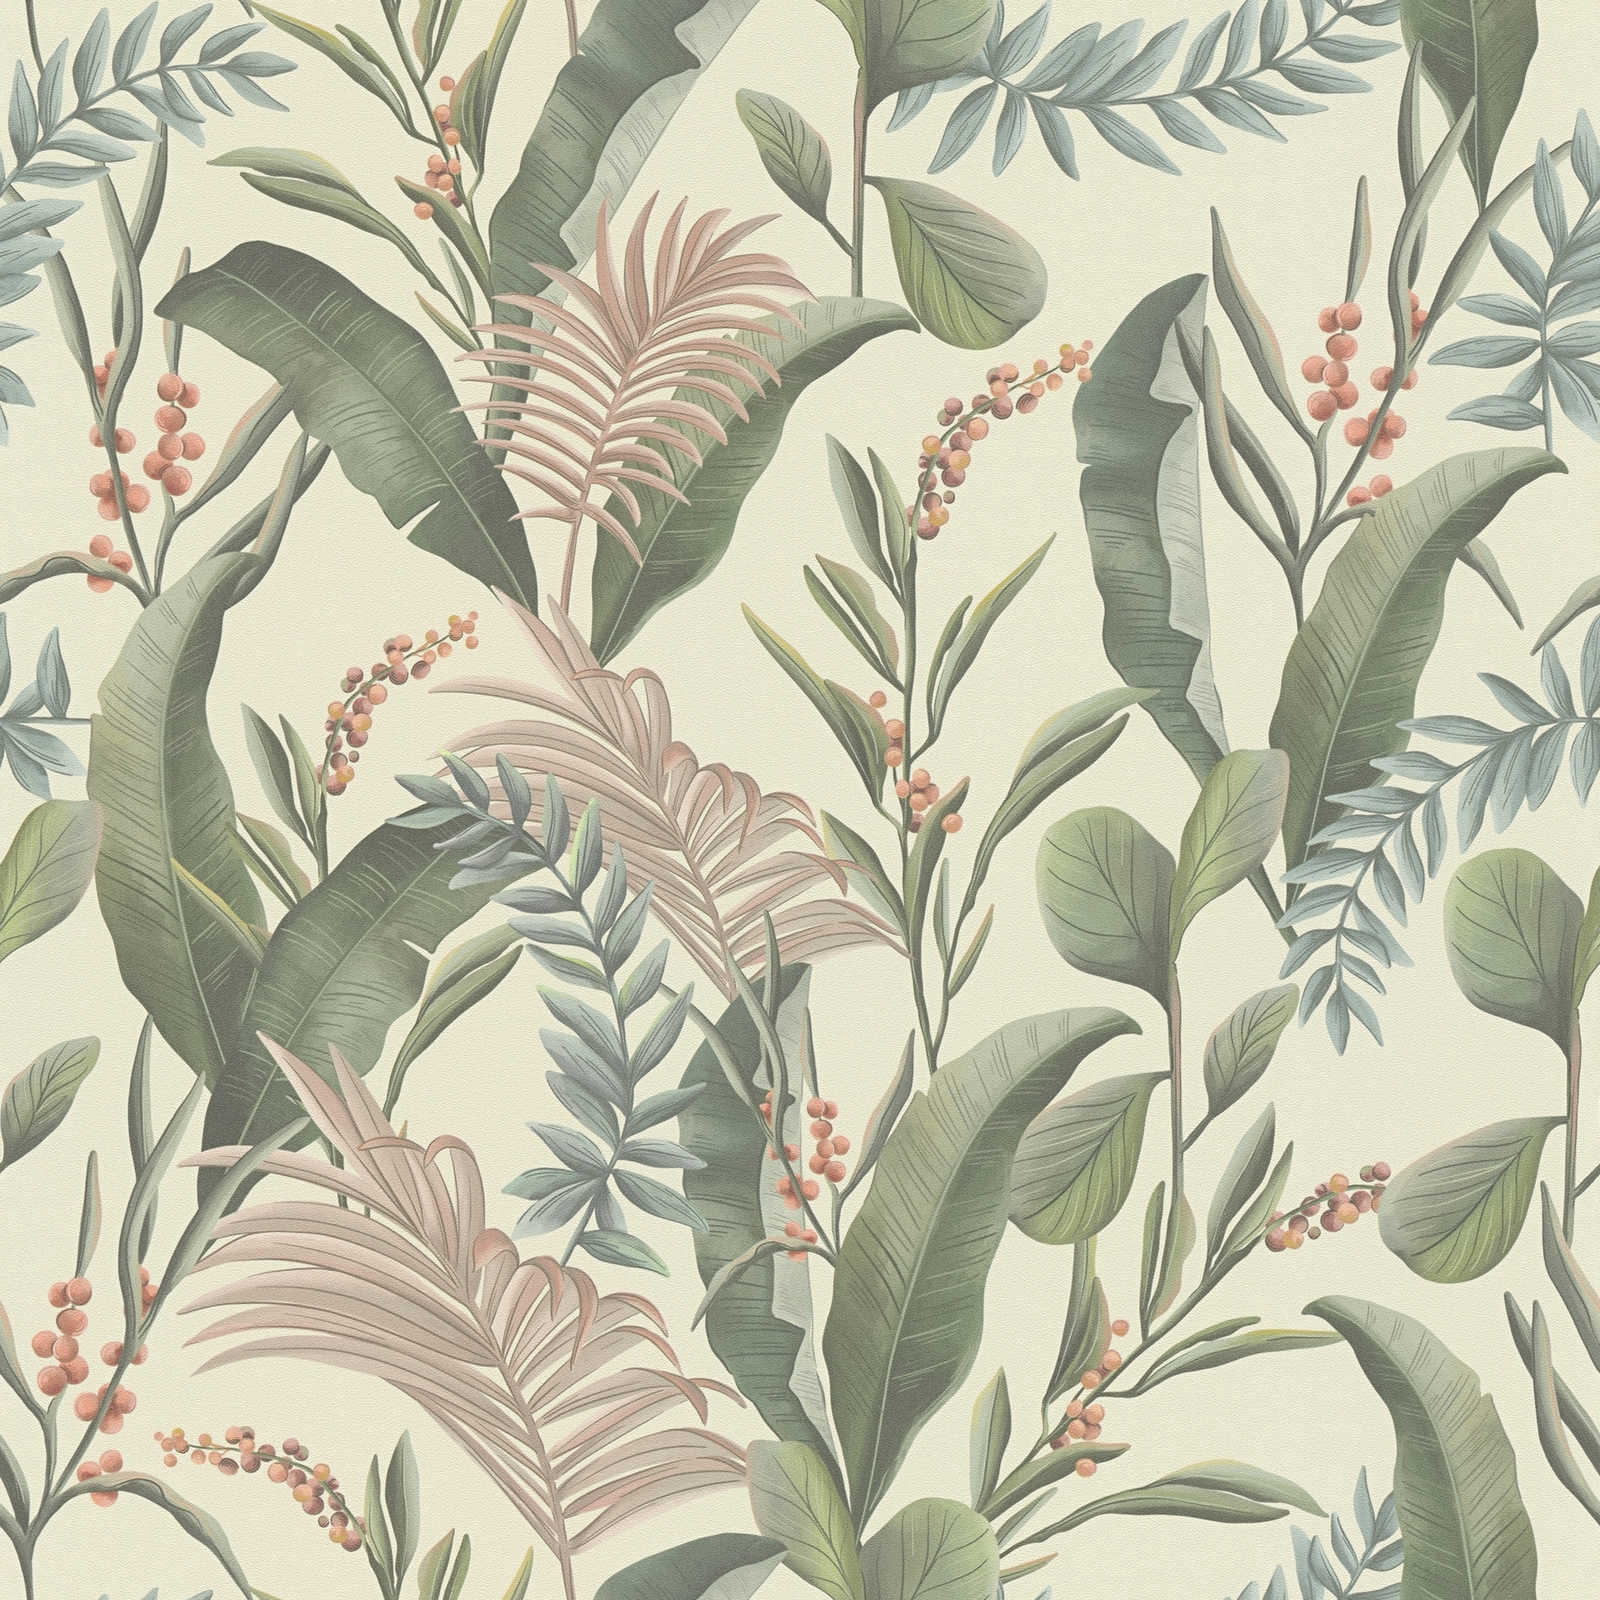         papier peint en papier floral avec feuilles style jungle structuré mat - crème, vert, beige
    